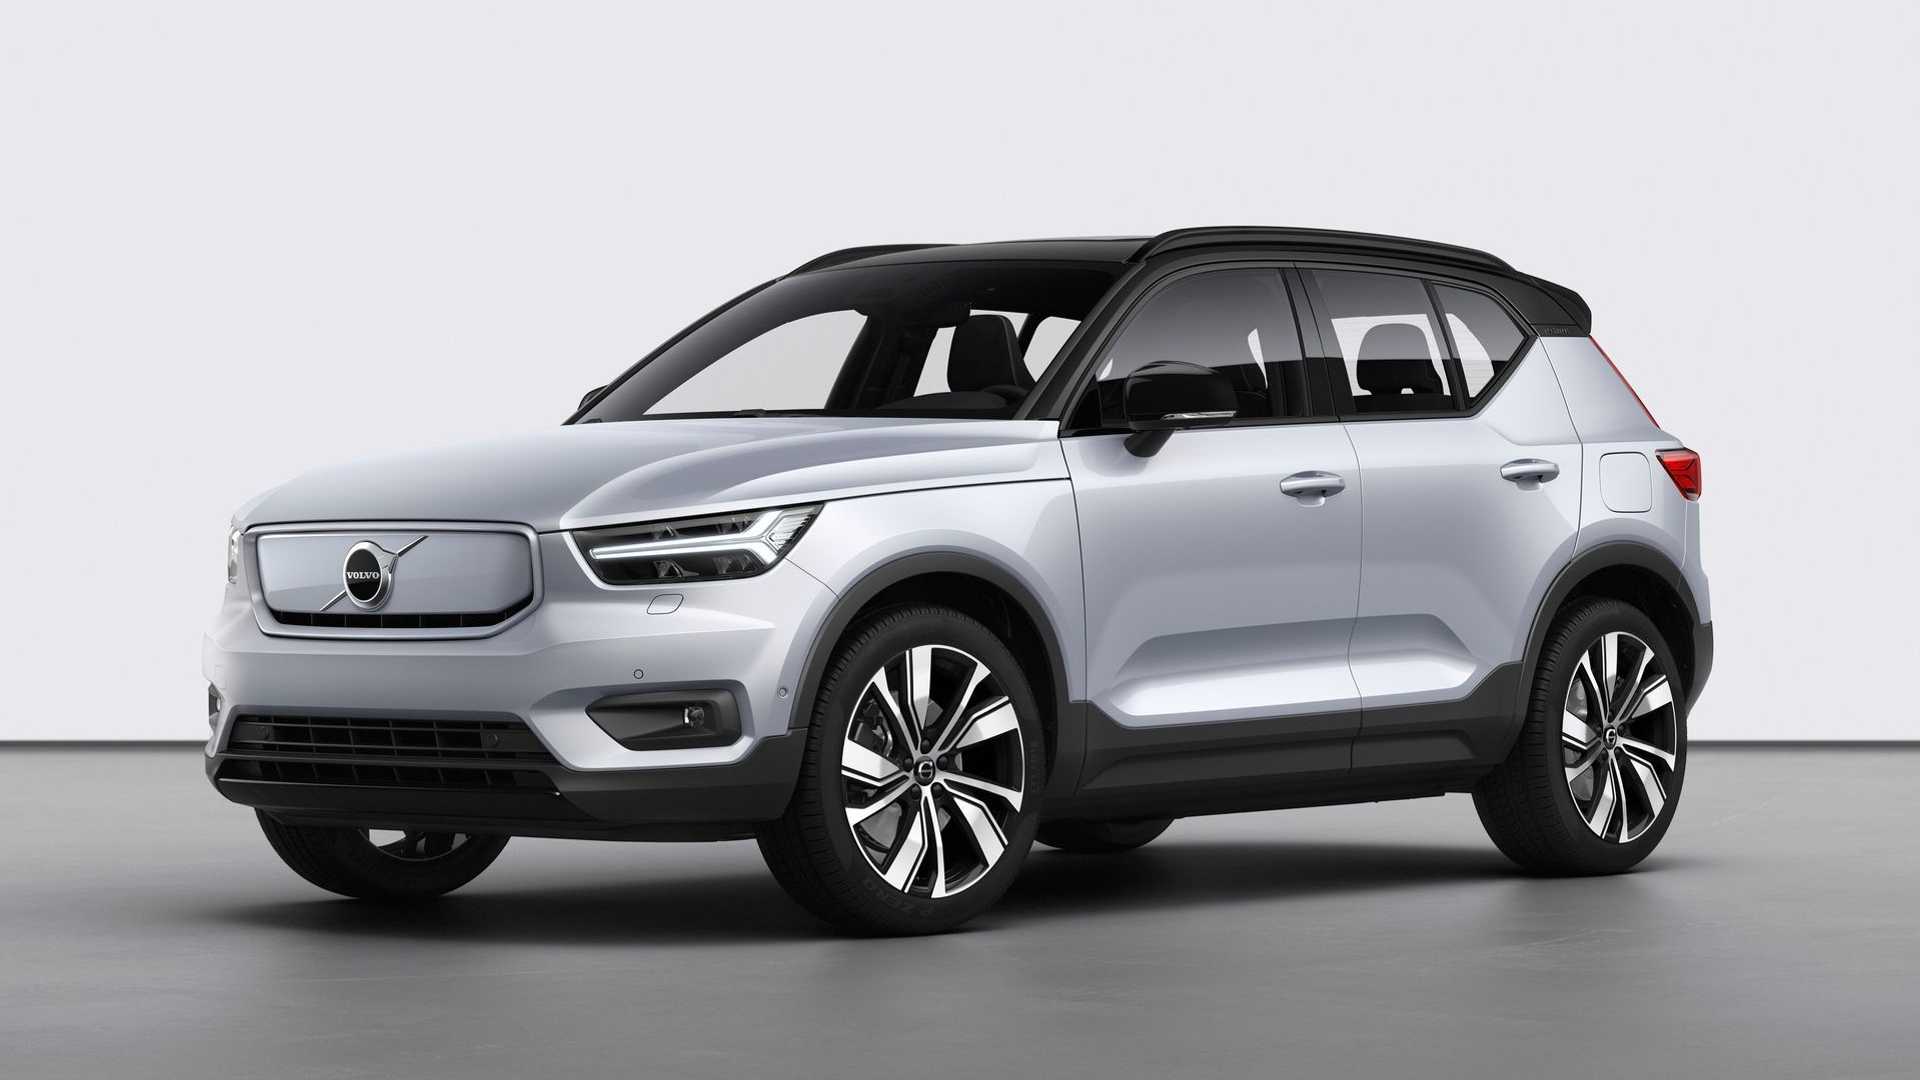 Volvo Menyebutkan Mobil Listrik Menghasilkan Emisi 70% Lebih Banyak Dari Mobil Bensin